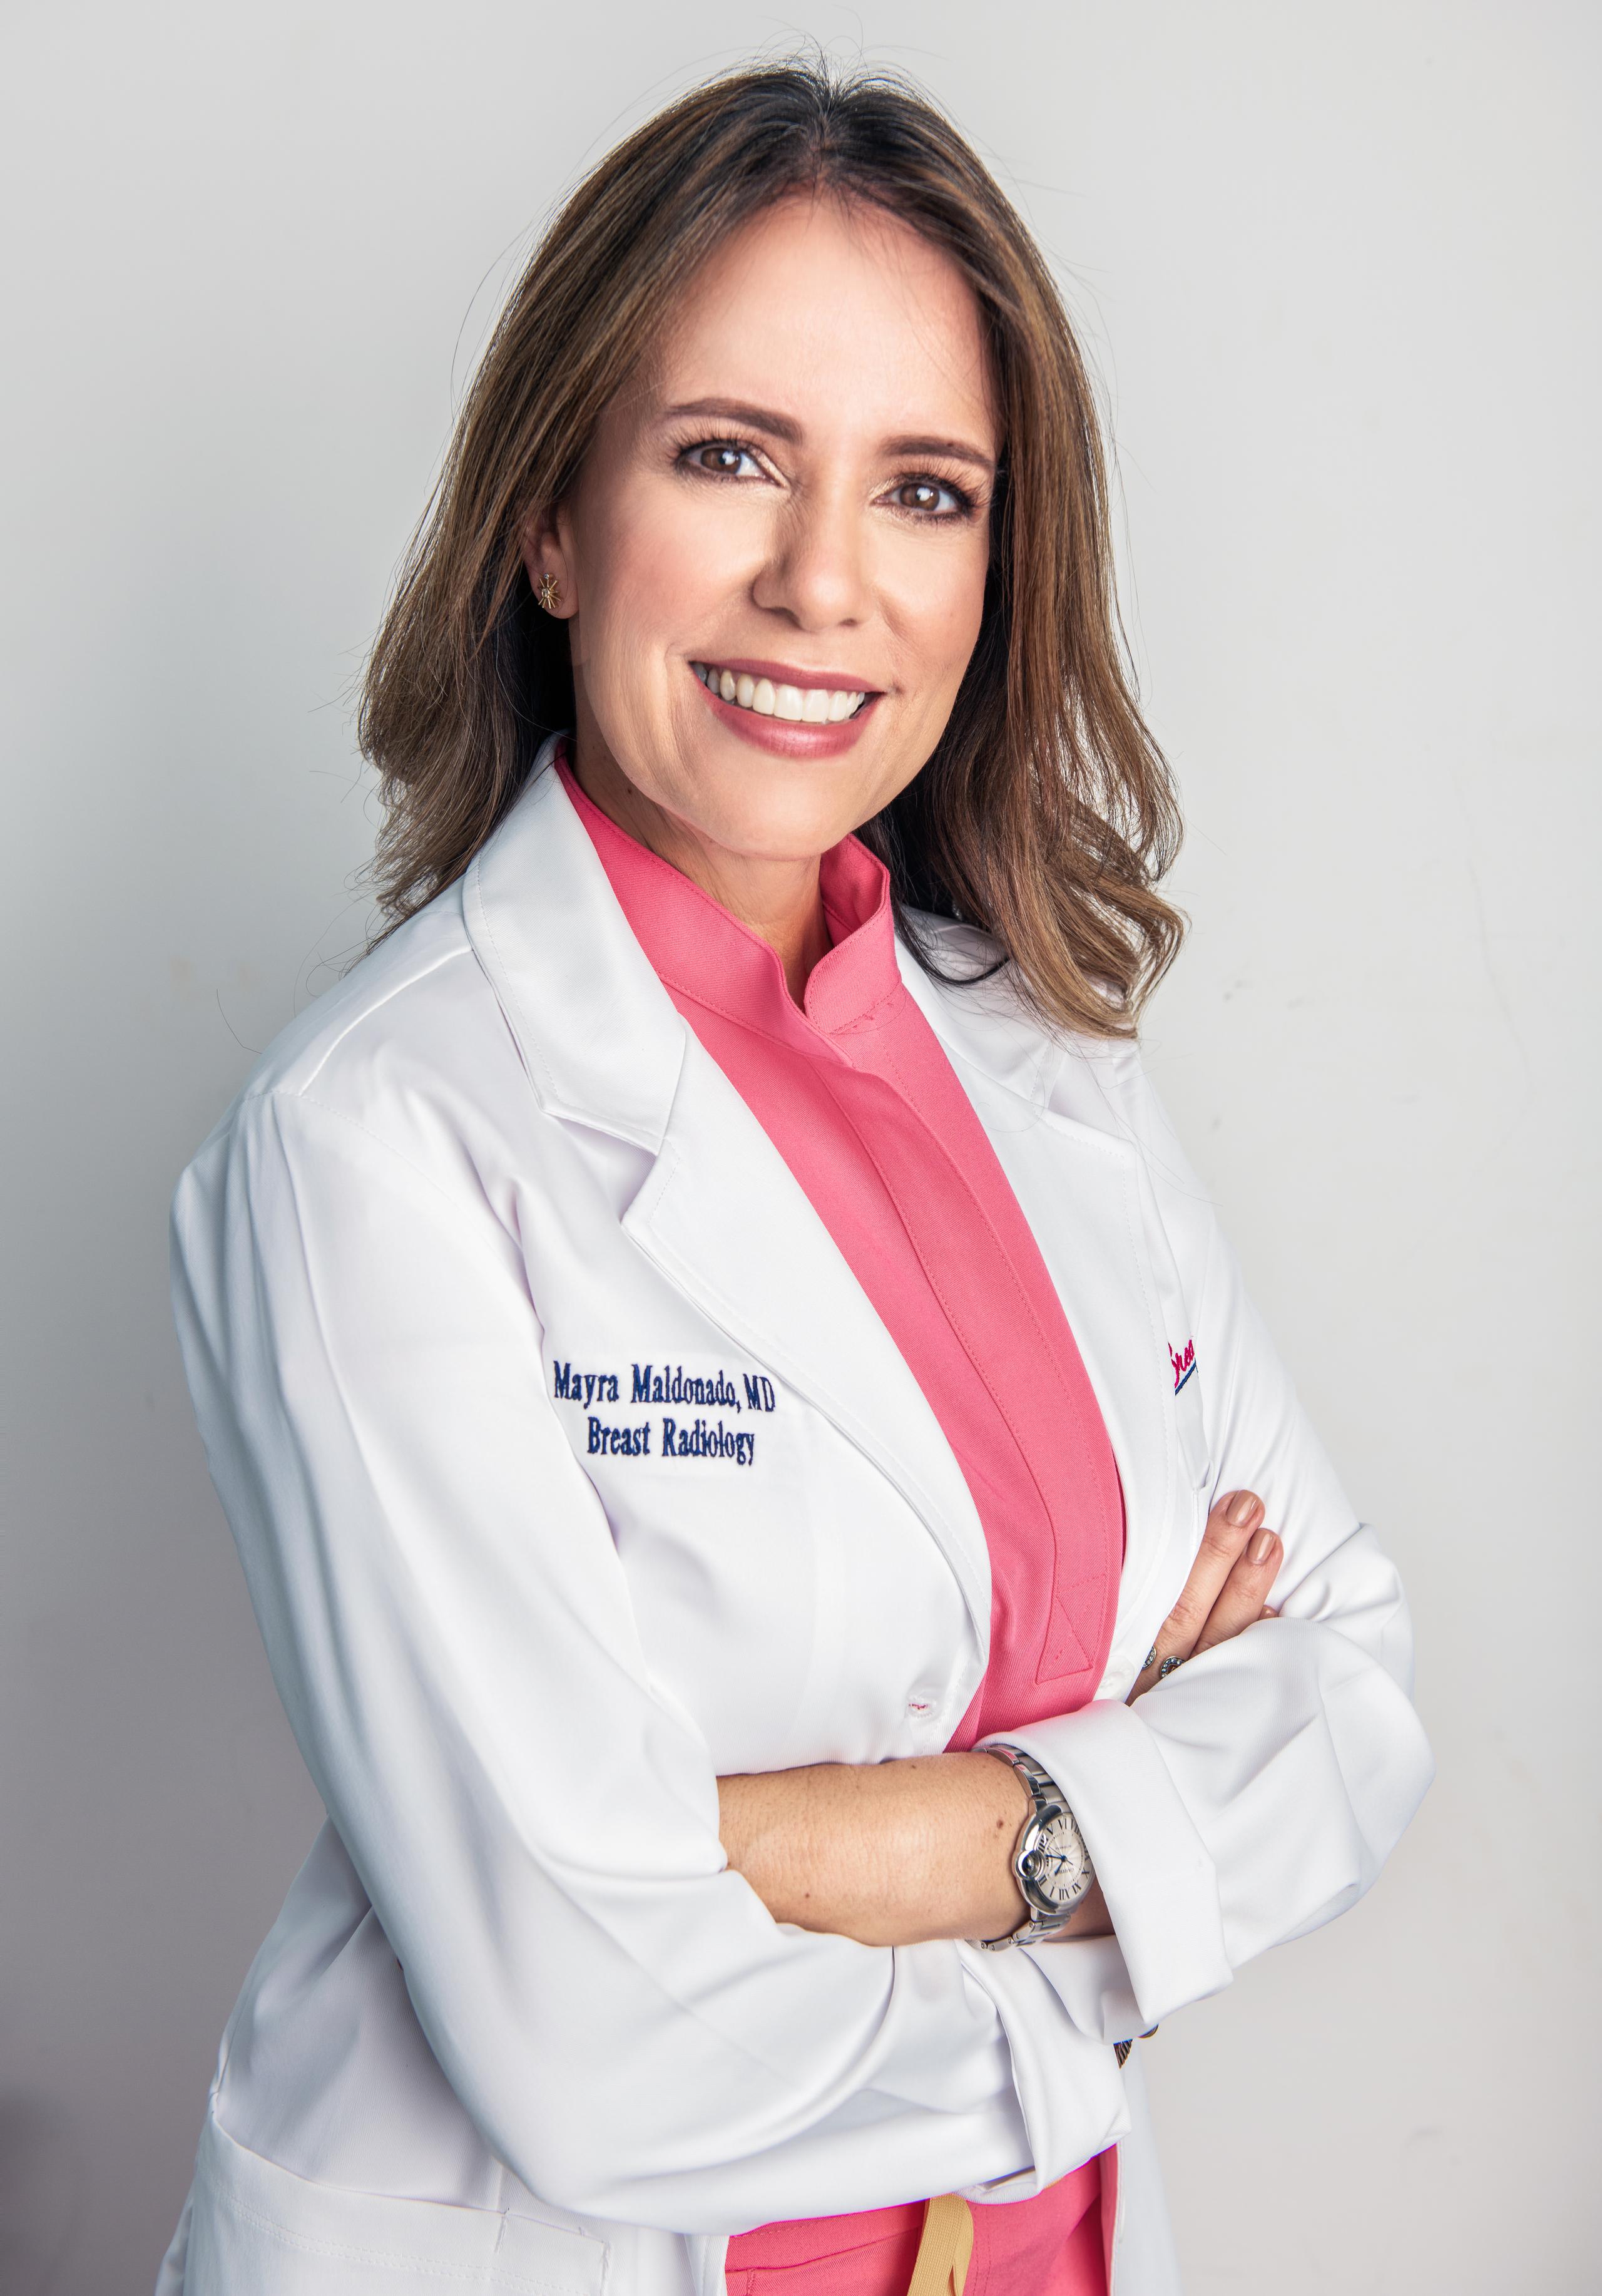 Dra. Mayra Maldonado Durán, radióloga, especialista en cáncer de seno